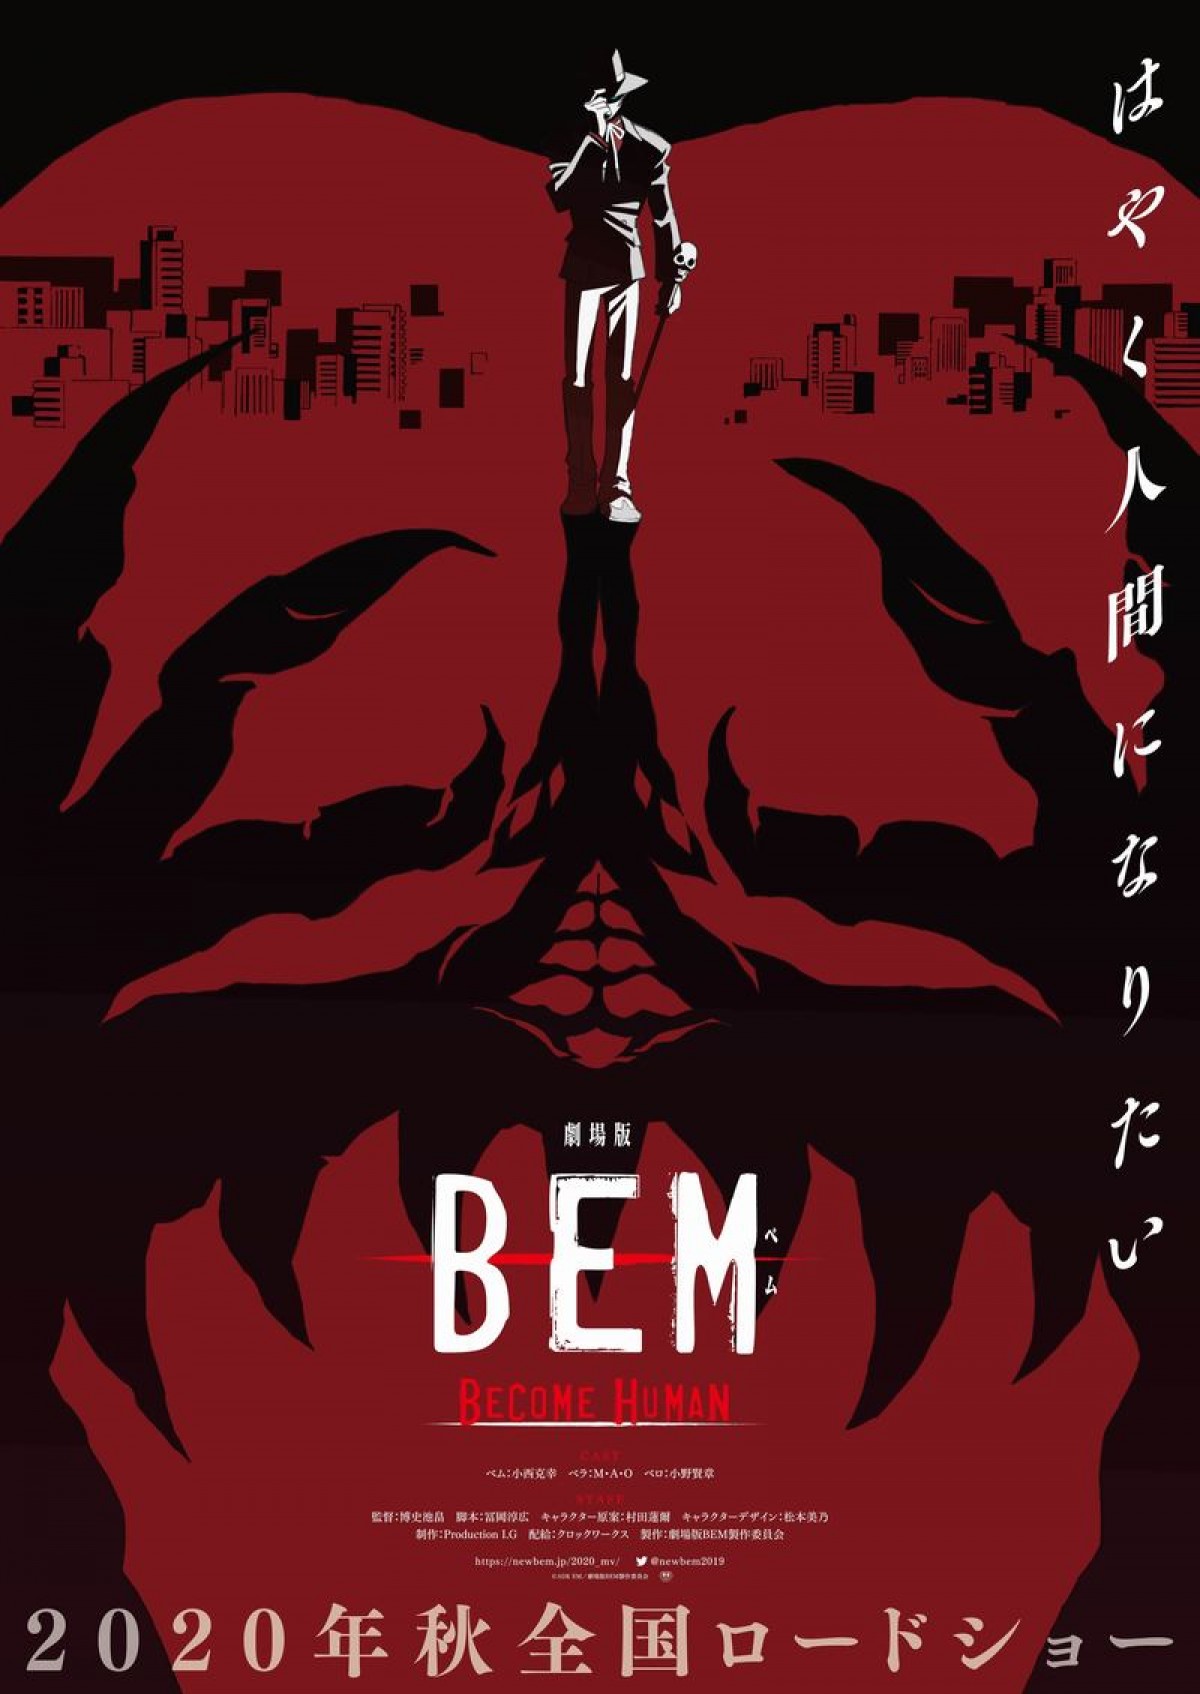 妖怪人間ベム、悲しき物語再び 『劇場版 BEM』あのセリフが流れる特報解禁